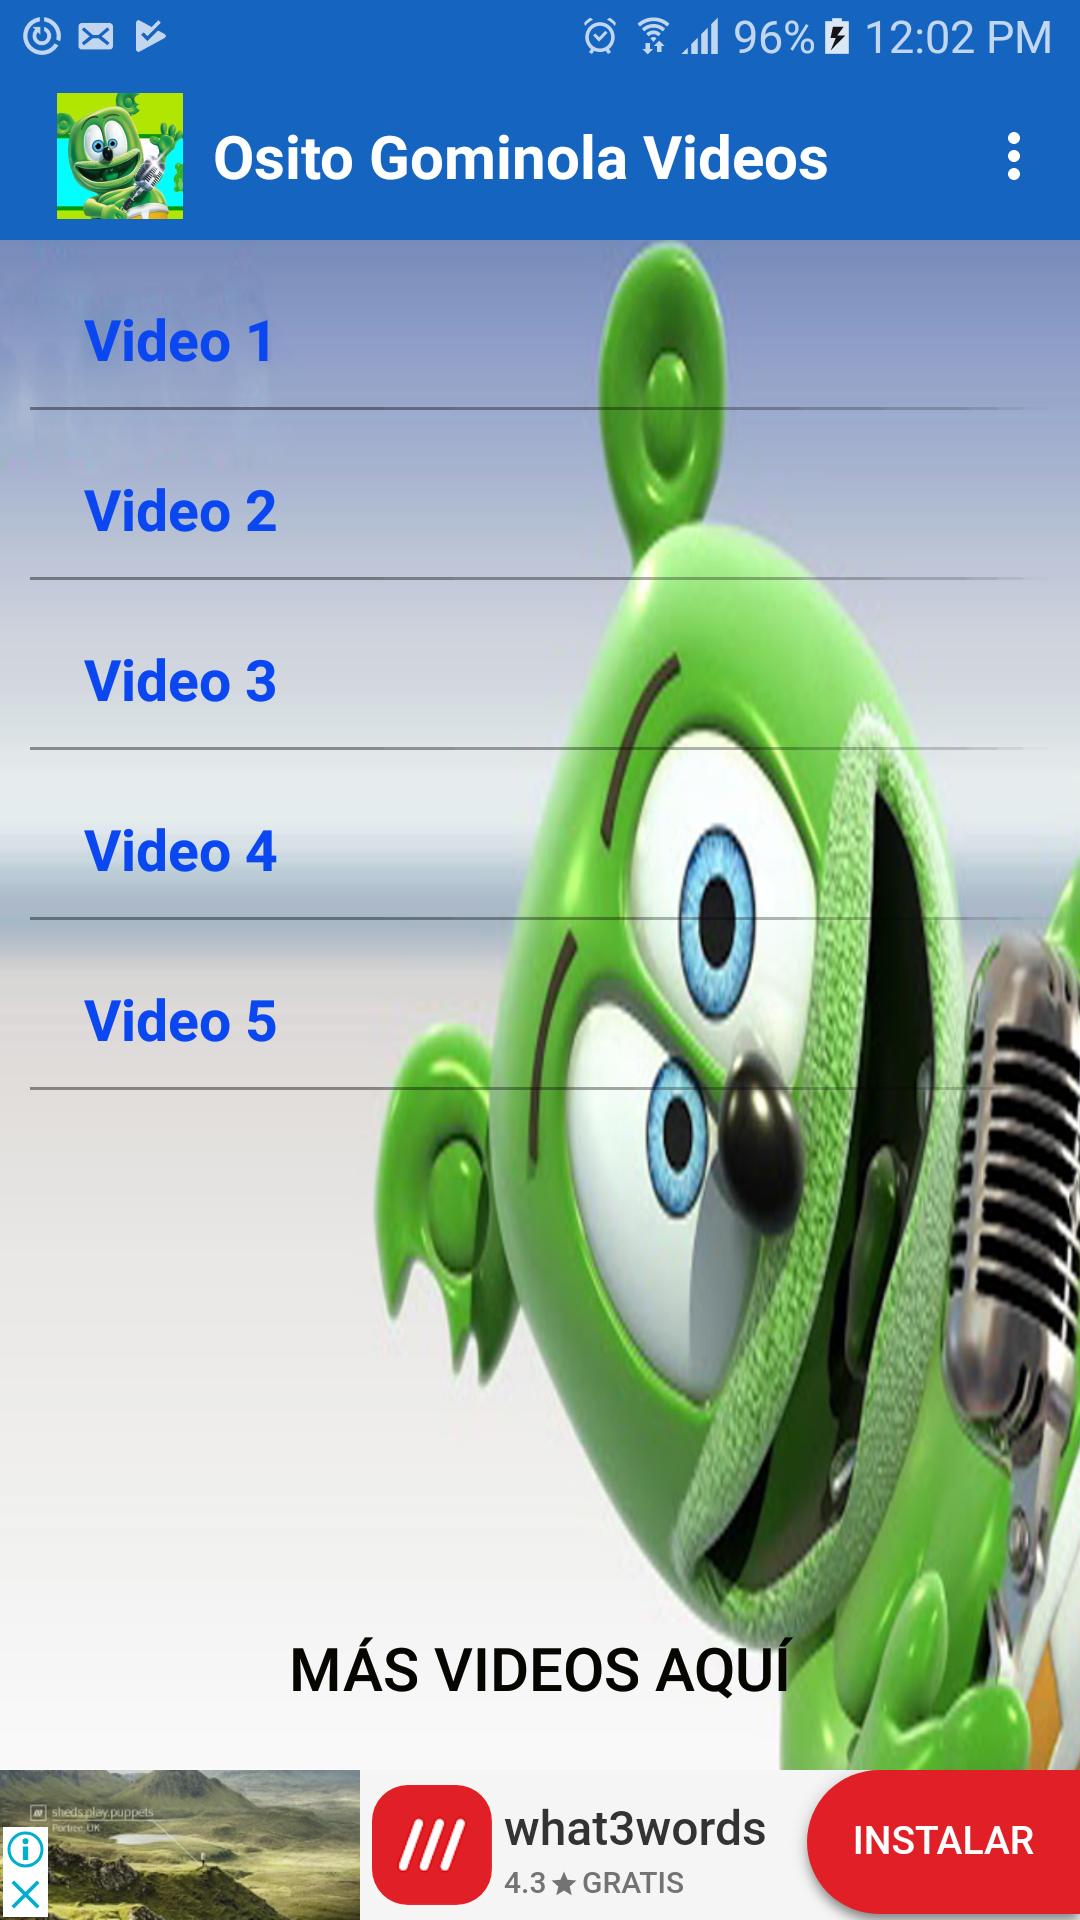 Videos de osito gominola sin internet APK voor Android Download